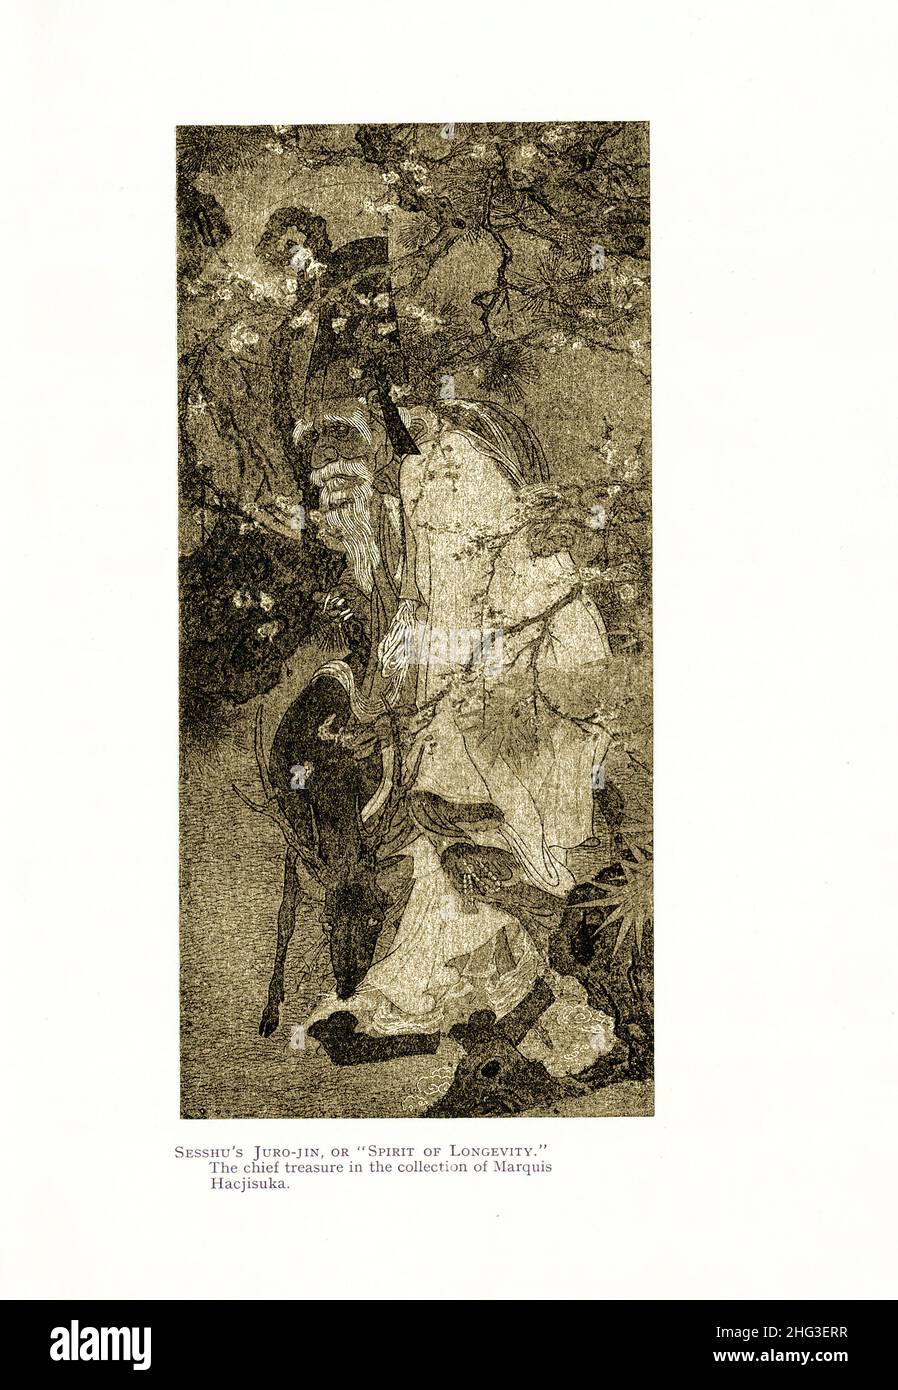 Japanische mittelalterliche Malerei: Juro-Jin, oder 'Geist der Langlebigkeit'. Von Sesshu. Reproduktion der Buchdarstellung von 1912 Sesshū Tōyō (bekannt als Oda Tōyō, U Stockfoto